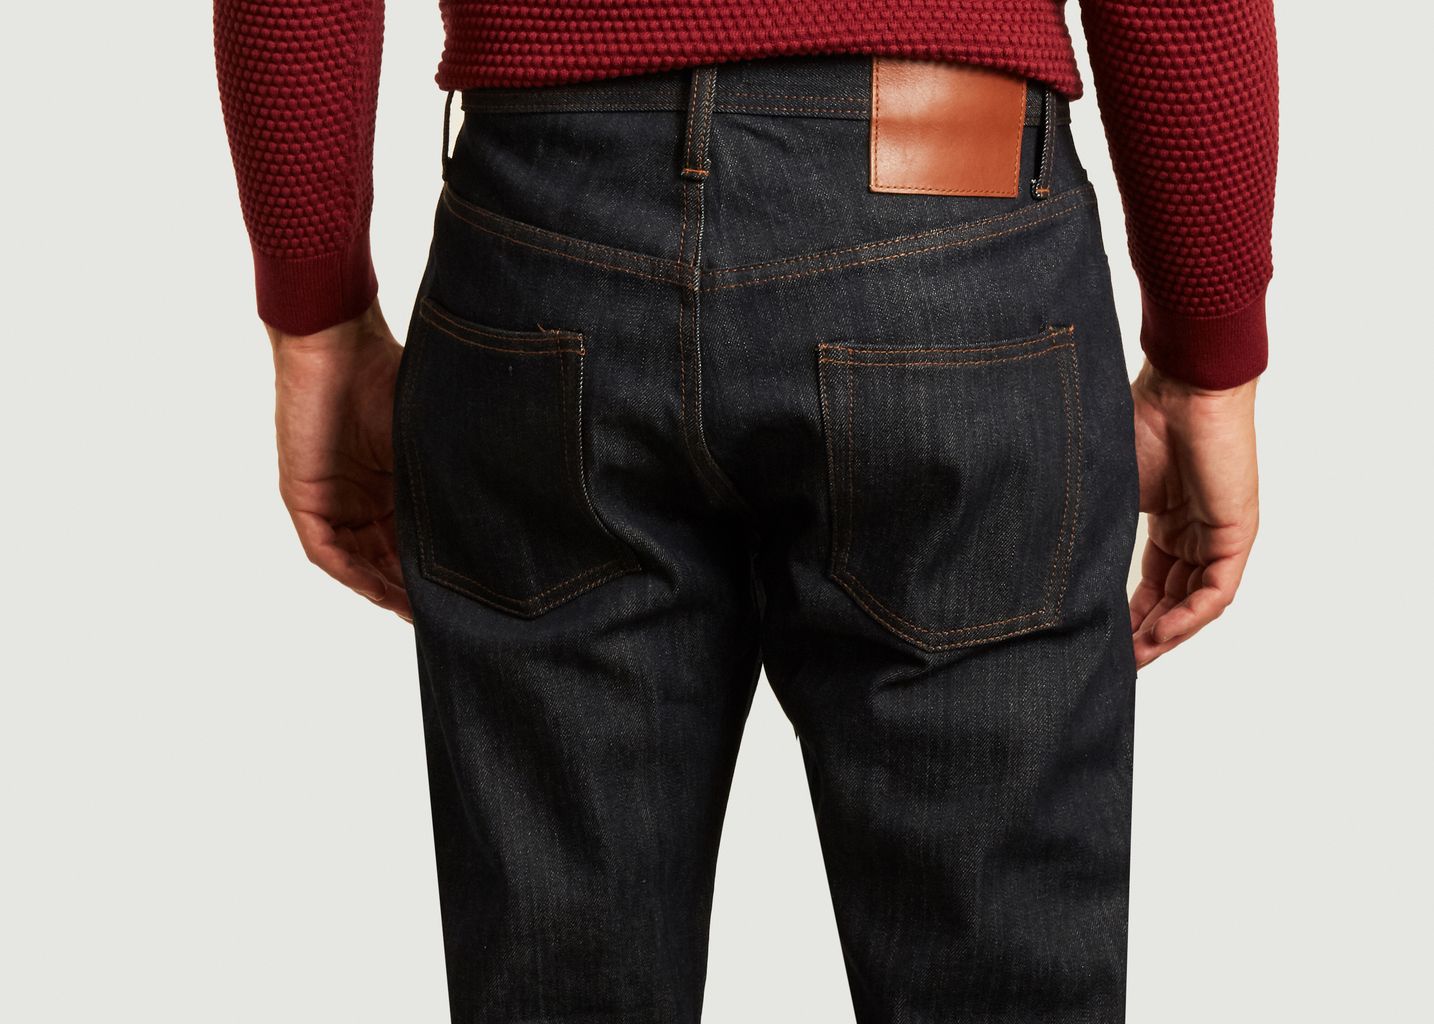 UB601 Entspannt konisch zulaufende Jeans mit 14,5 Unzen Webkante - The Unbranded Brand